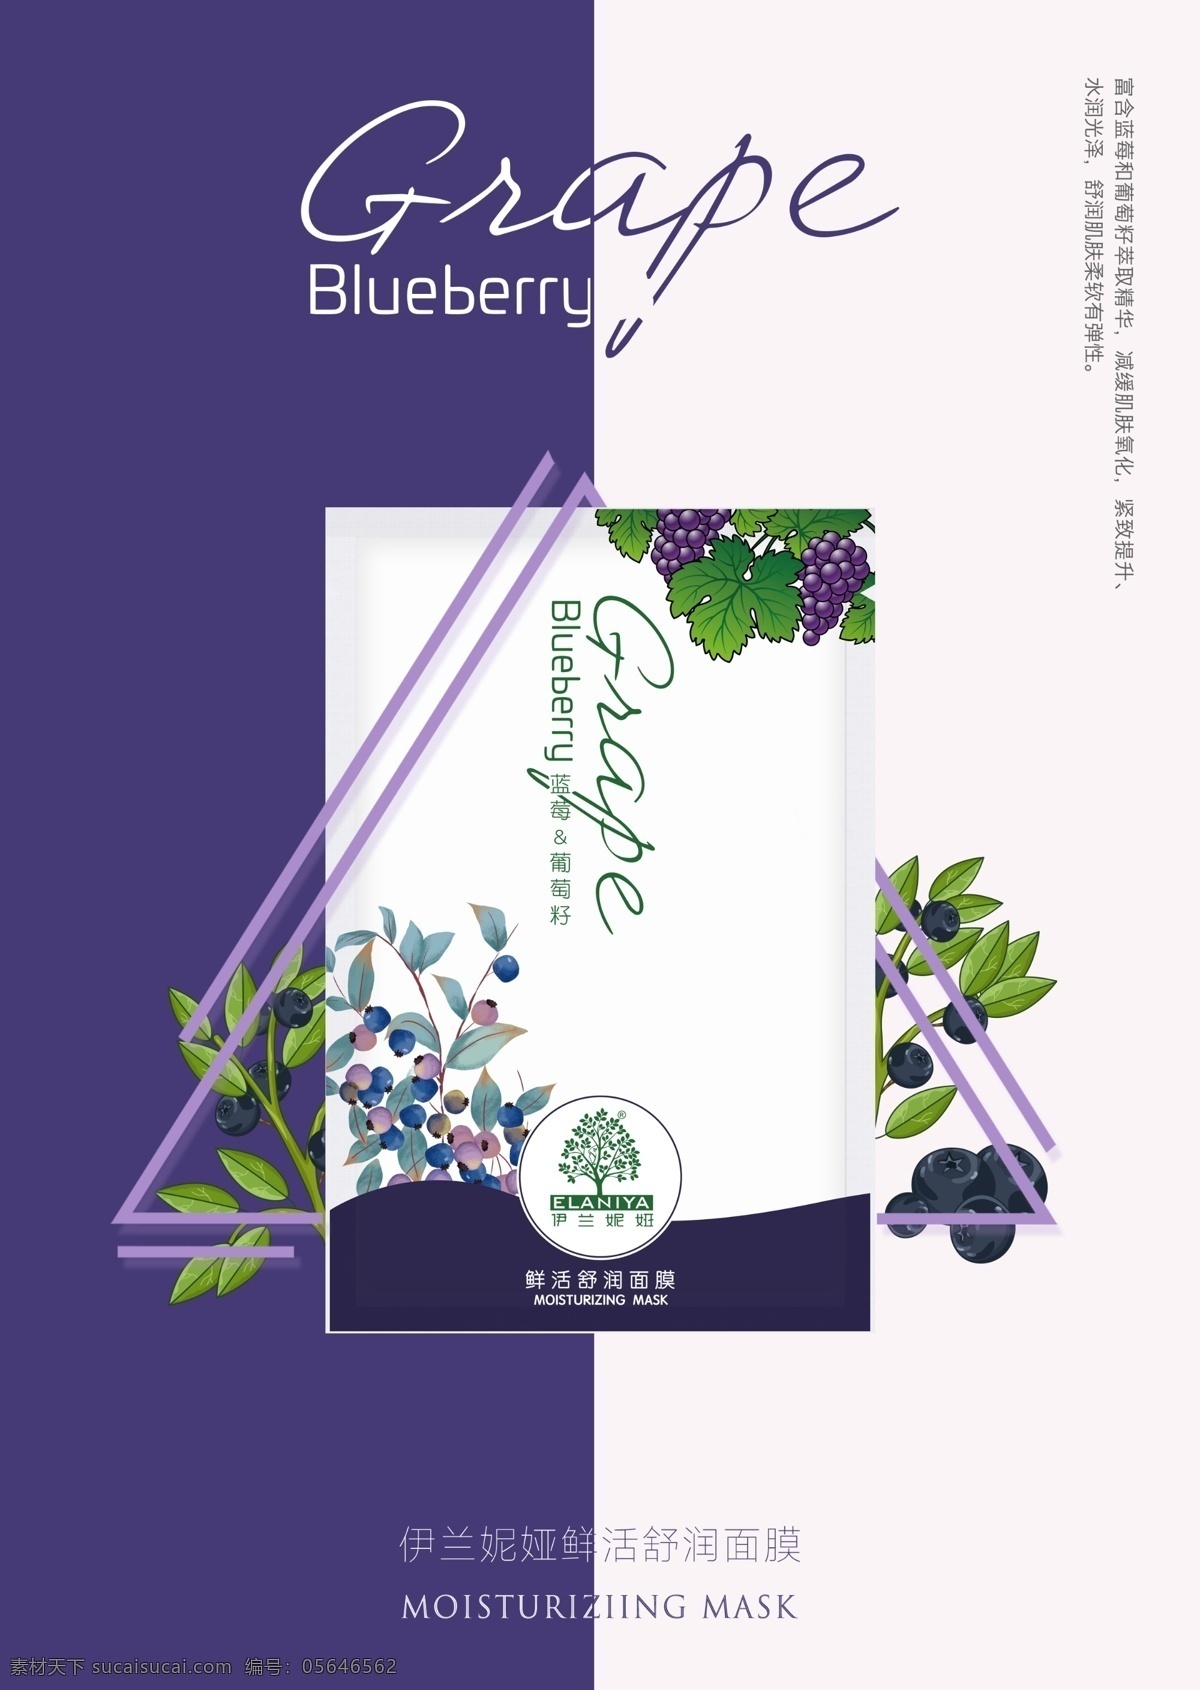 蓝莓 葡萄 籽 系列 鲜活 舒 润 面膜 紫色 蚕丝 化妆品 葡萄籽